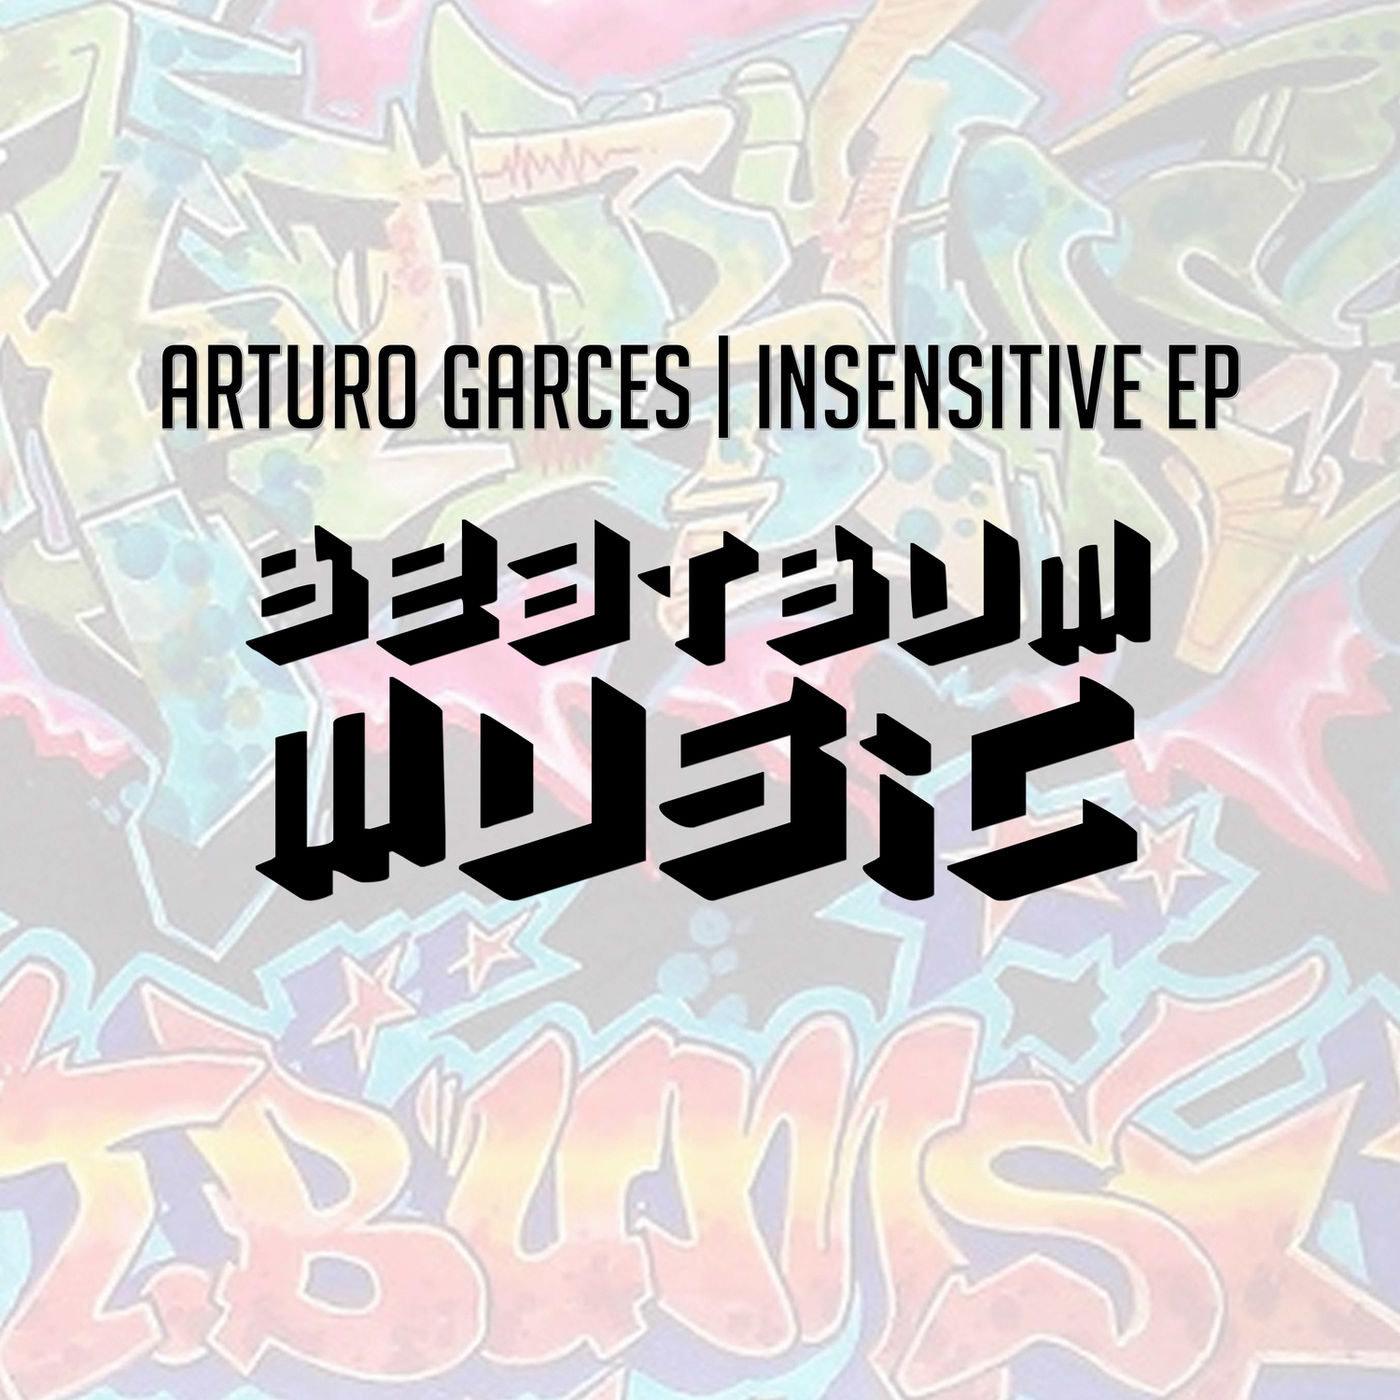 Arturo Garces - Insensitive EP / Beat Bum Music